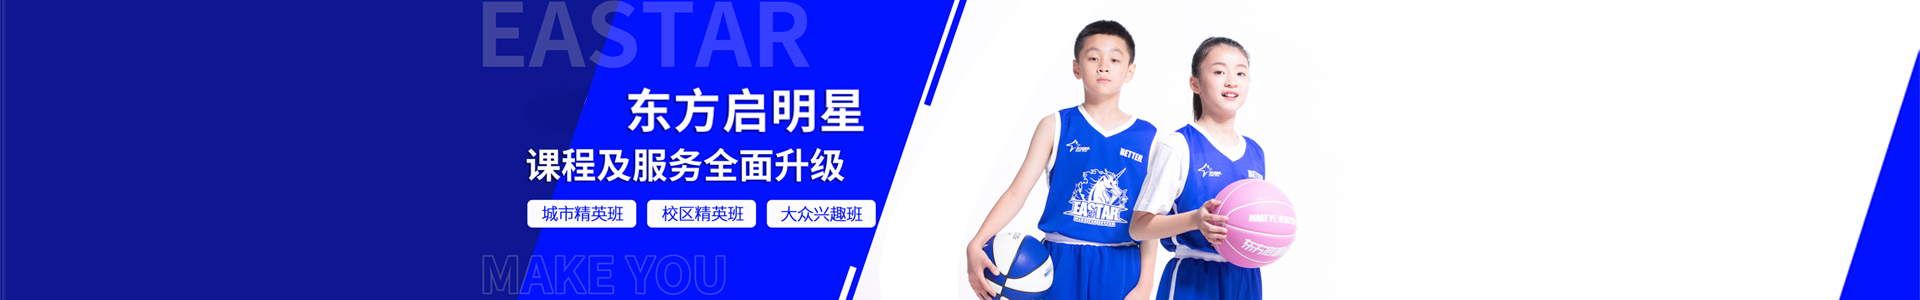 深圳东方启明星篮球训练营